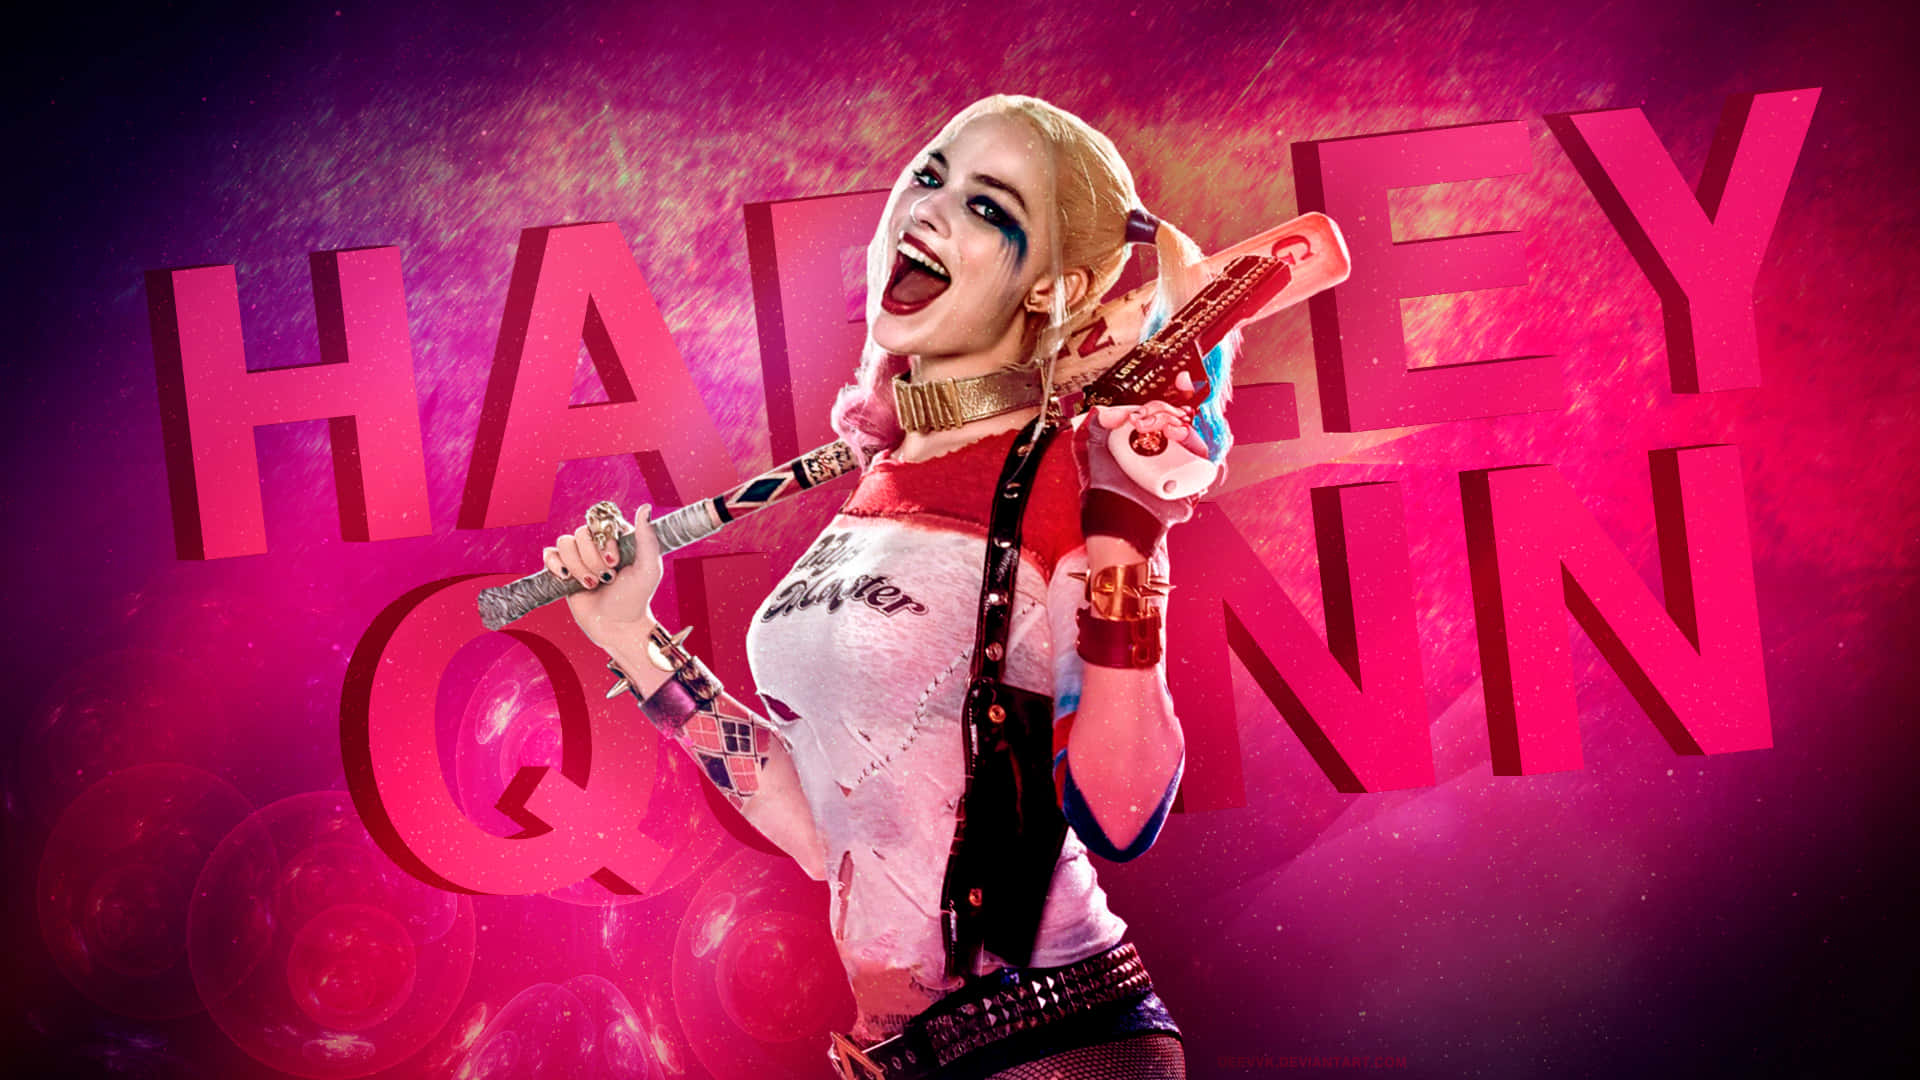 Margotrobbie Levererar Den Maniska Energin Av Harley Quinn På Ett Imponerande Sätt På Datorskärmen Eller Mobiltelefonens Bakgrundsbild. Wallpaper